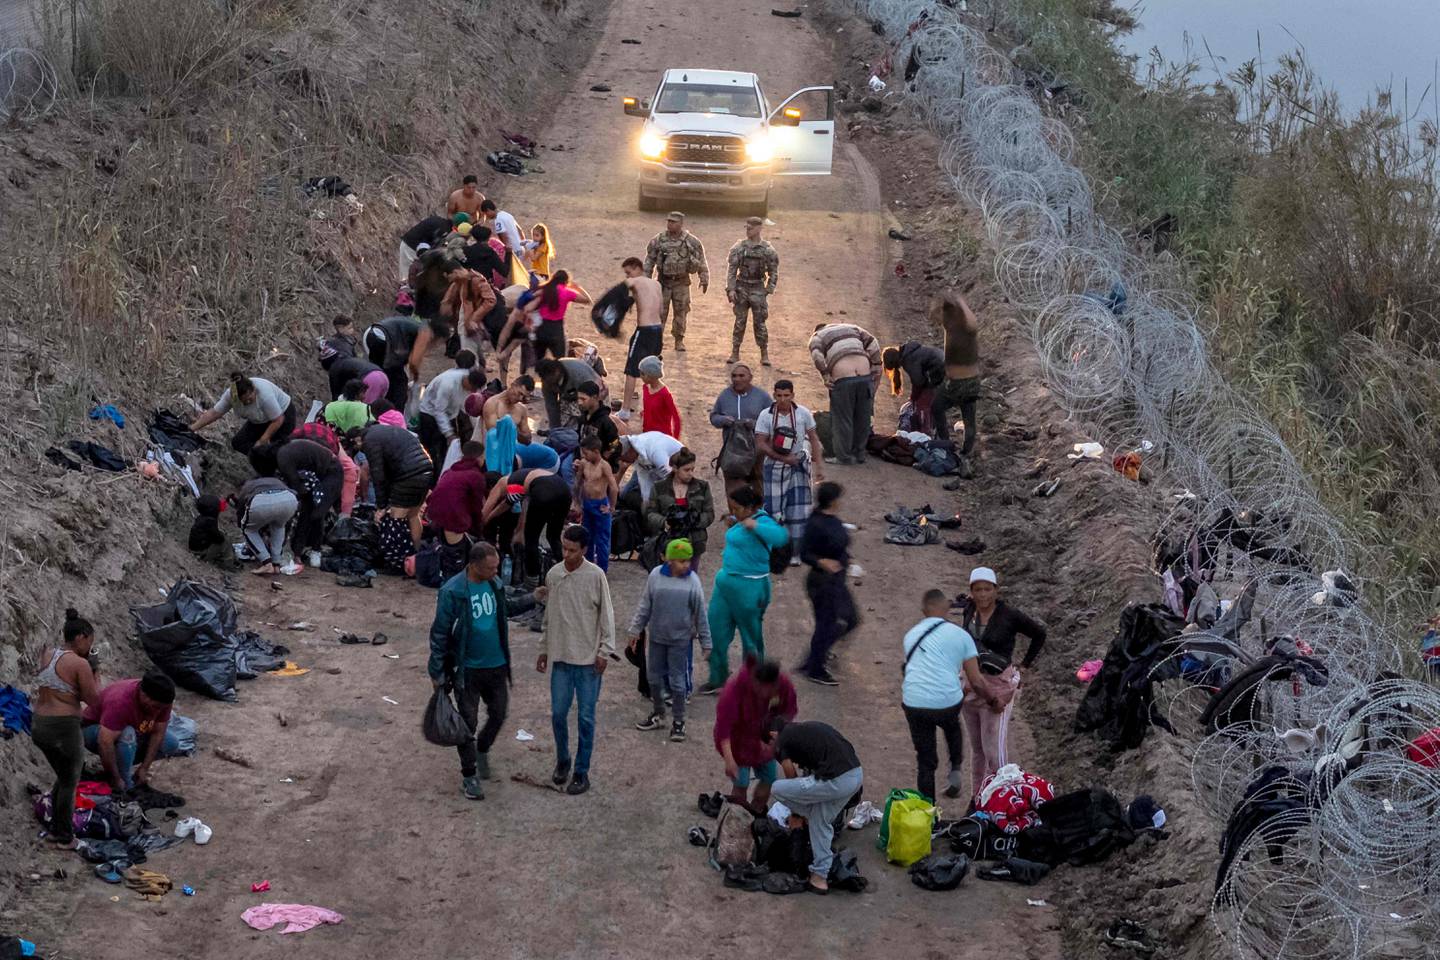 La crisis migratoria es un quebradero de cabeza para Biden, quien propuso conceder la ciudadanía a 11 millones de migrantes en un país que lleva más de 35 años sin una ley de este tipo. Pero tropezó con la oposición del Congreso. Foto: AFP